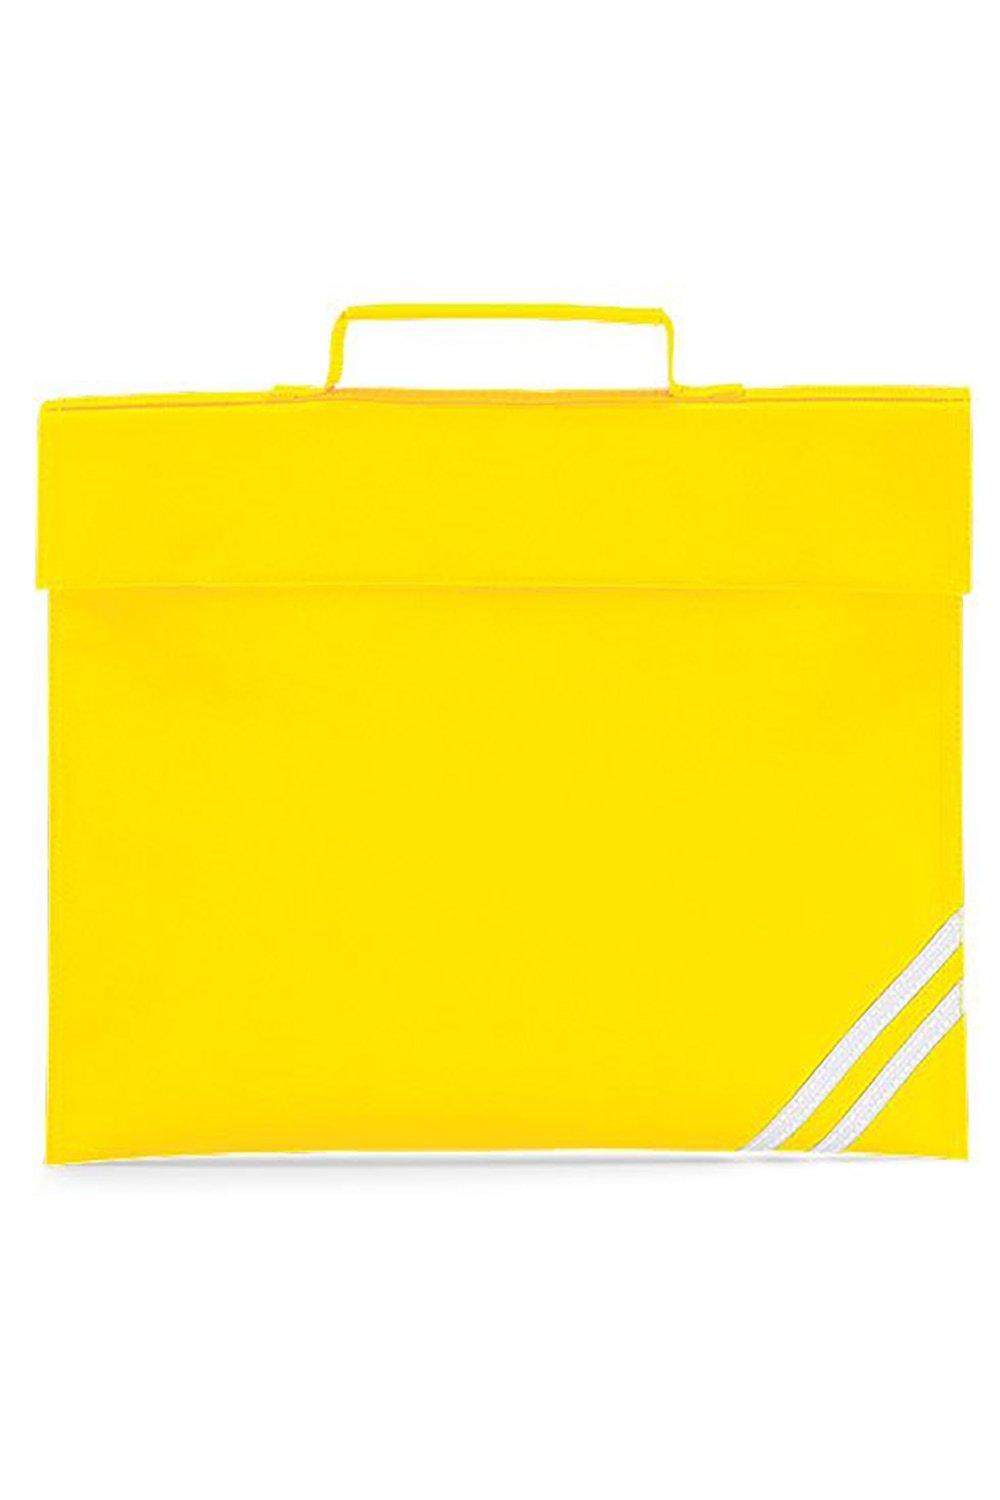 Классическая сумка для книг - 5 литров (2 шт. в упаковке) Quadra, желтый